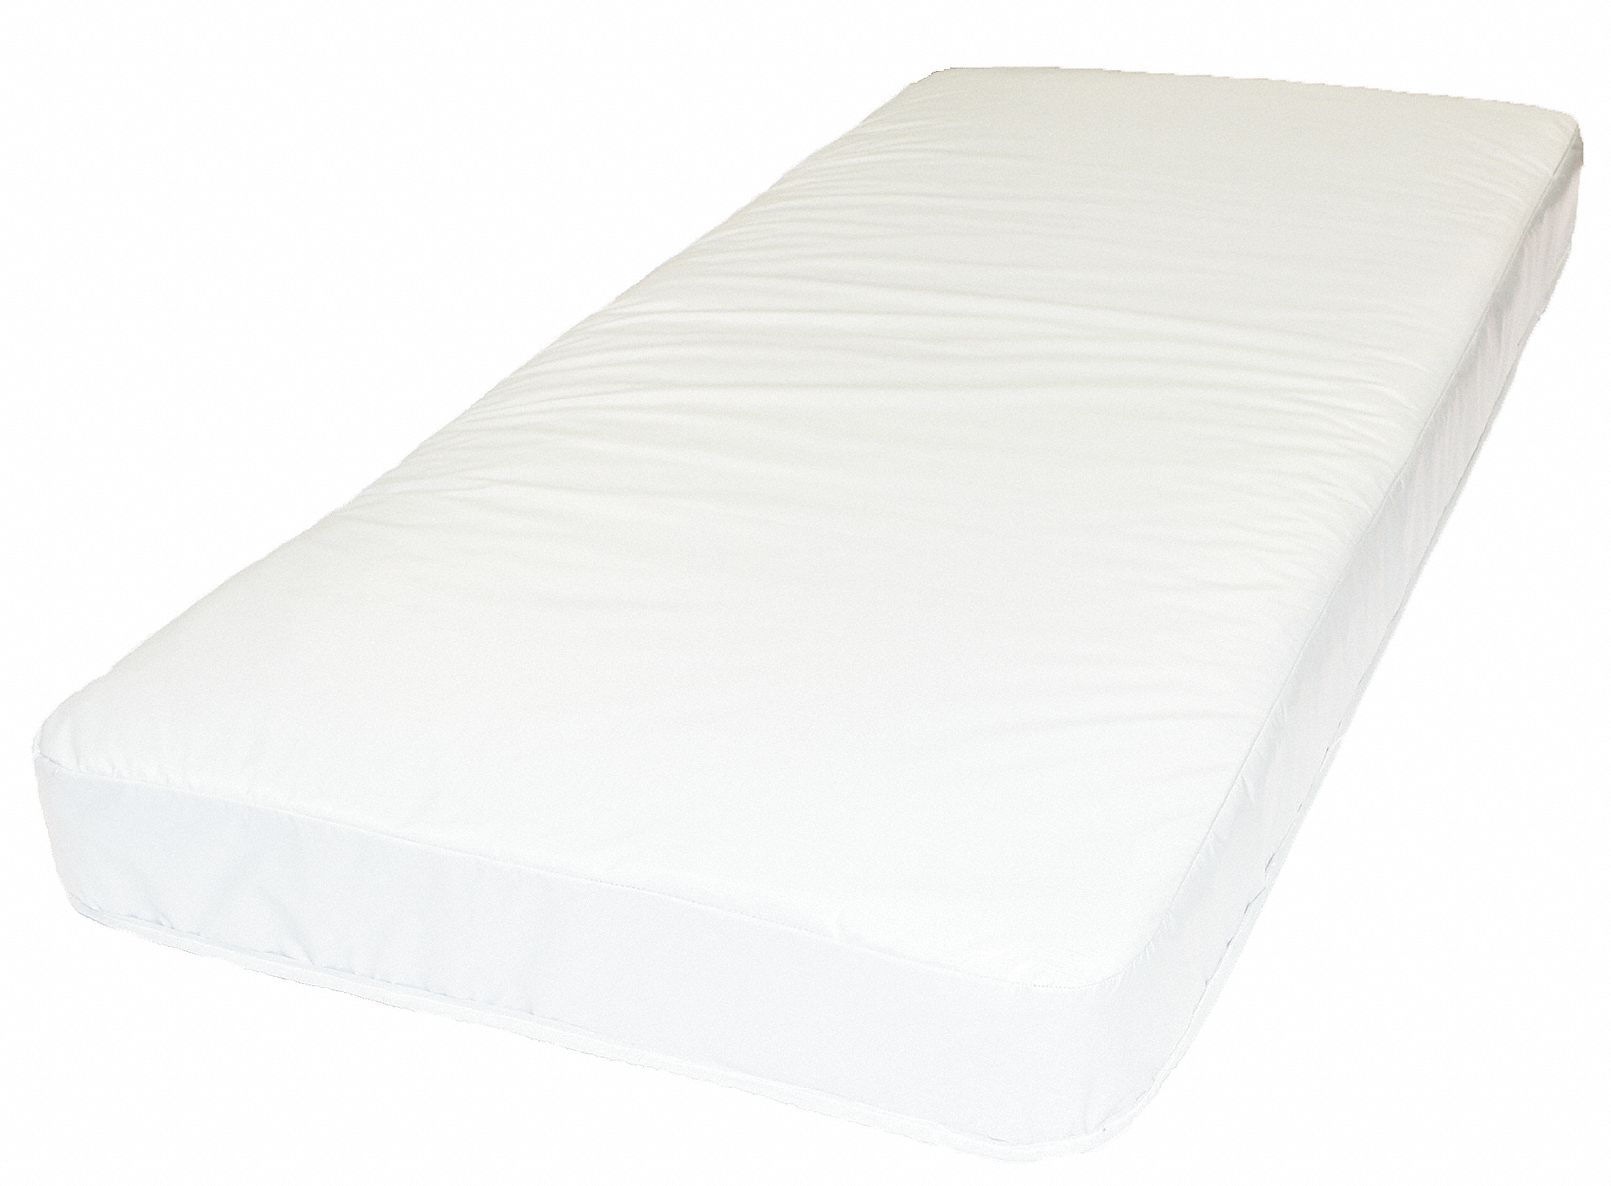 36 x 84 mattress pad